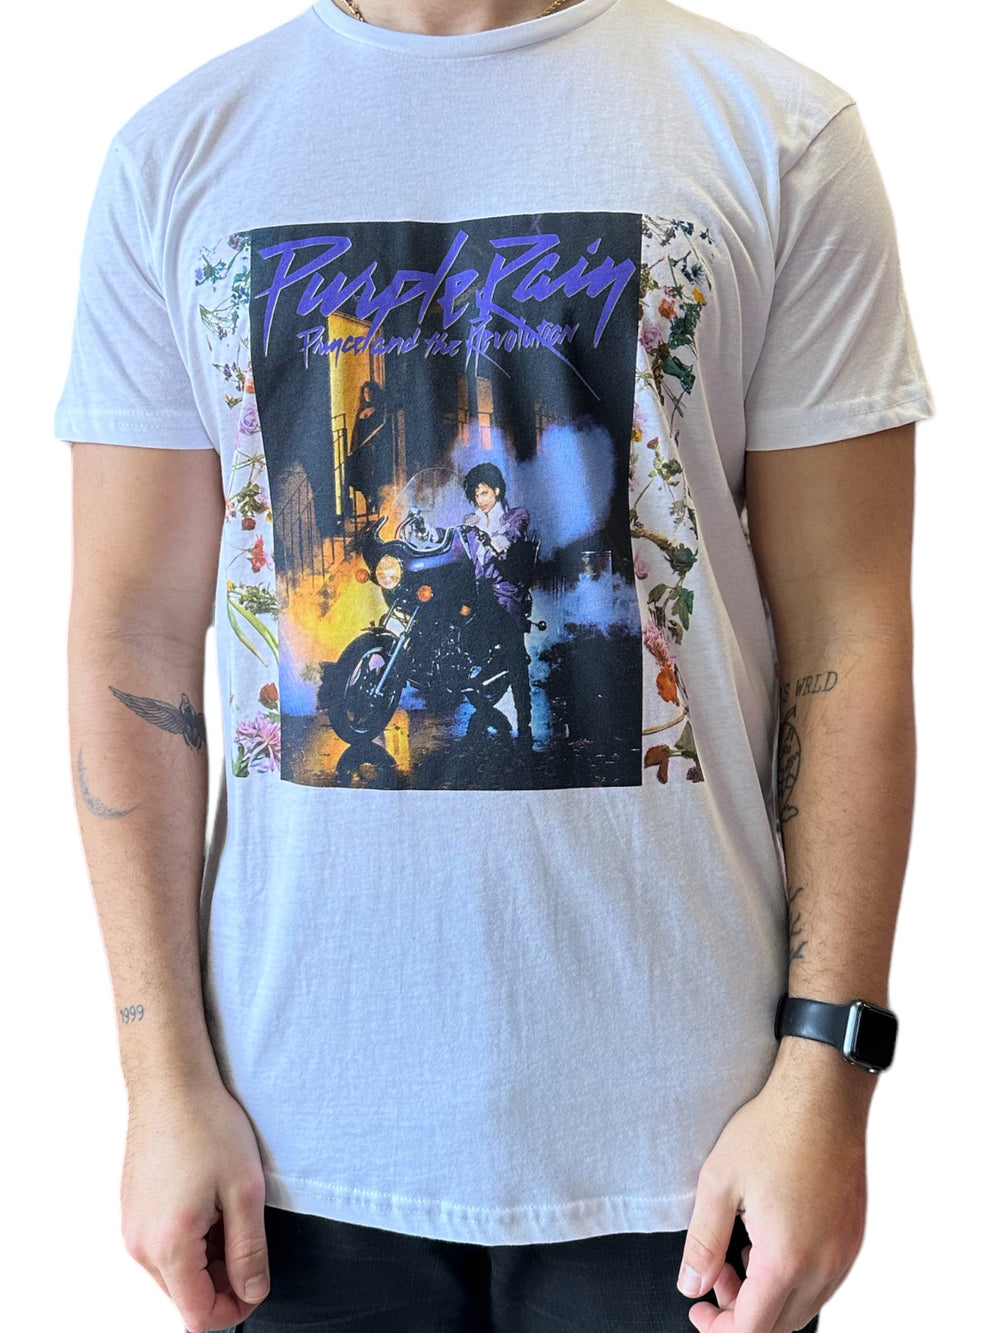 Prince – Purple Rain Album Front Cover Flowers Unisex Official T-Shirt NEW